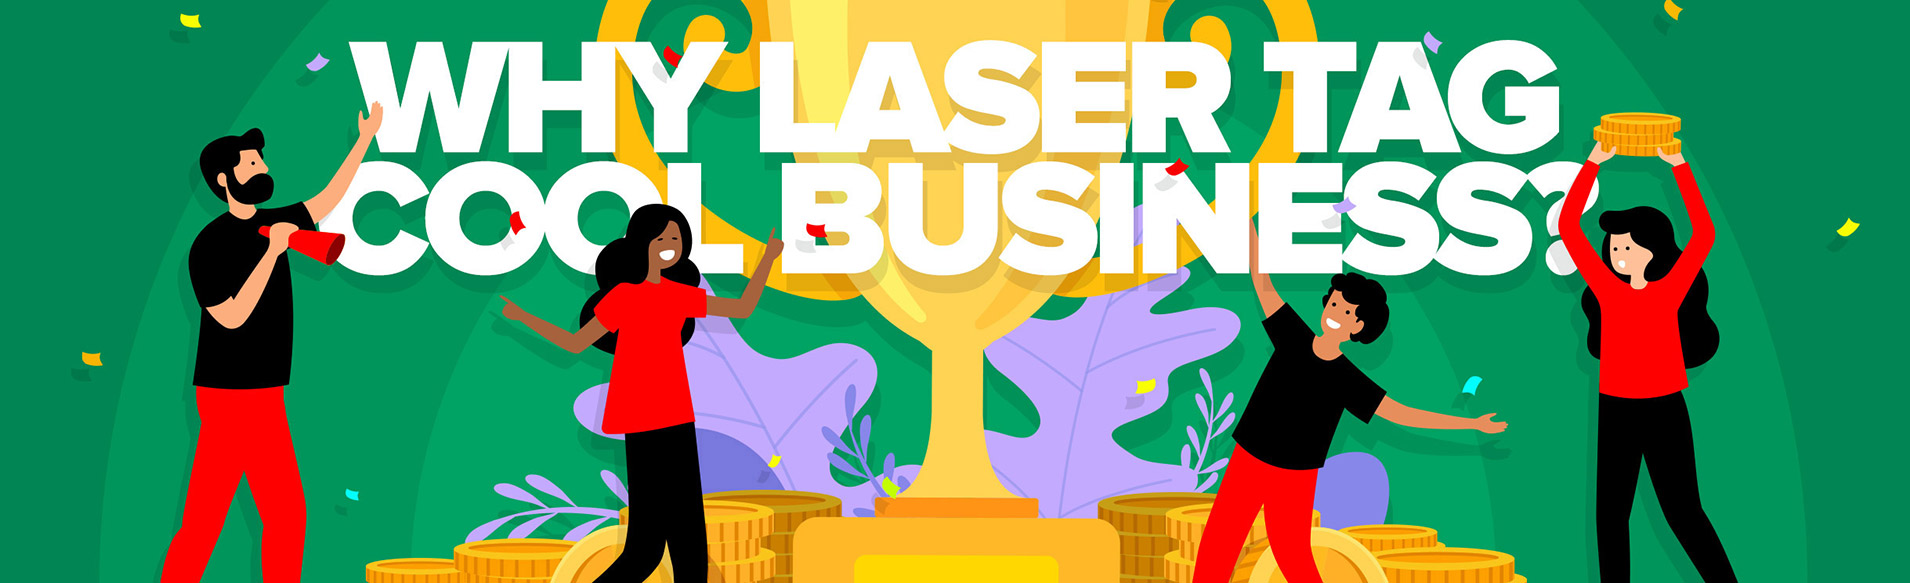 Start laser tag business